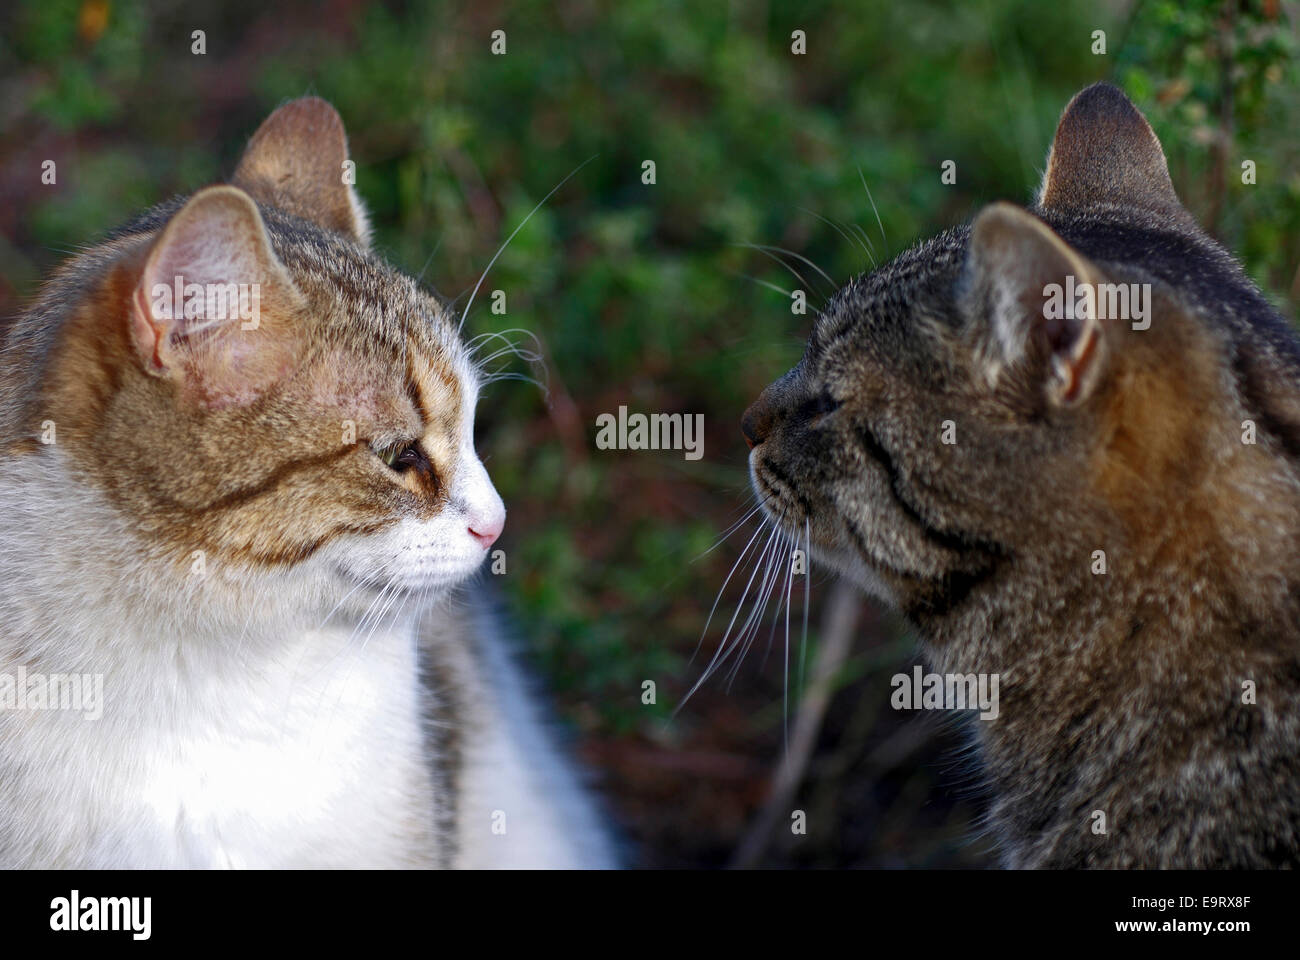 Zwei Katzen Auge in auge Foto Stock